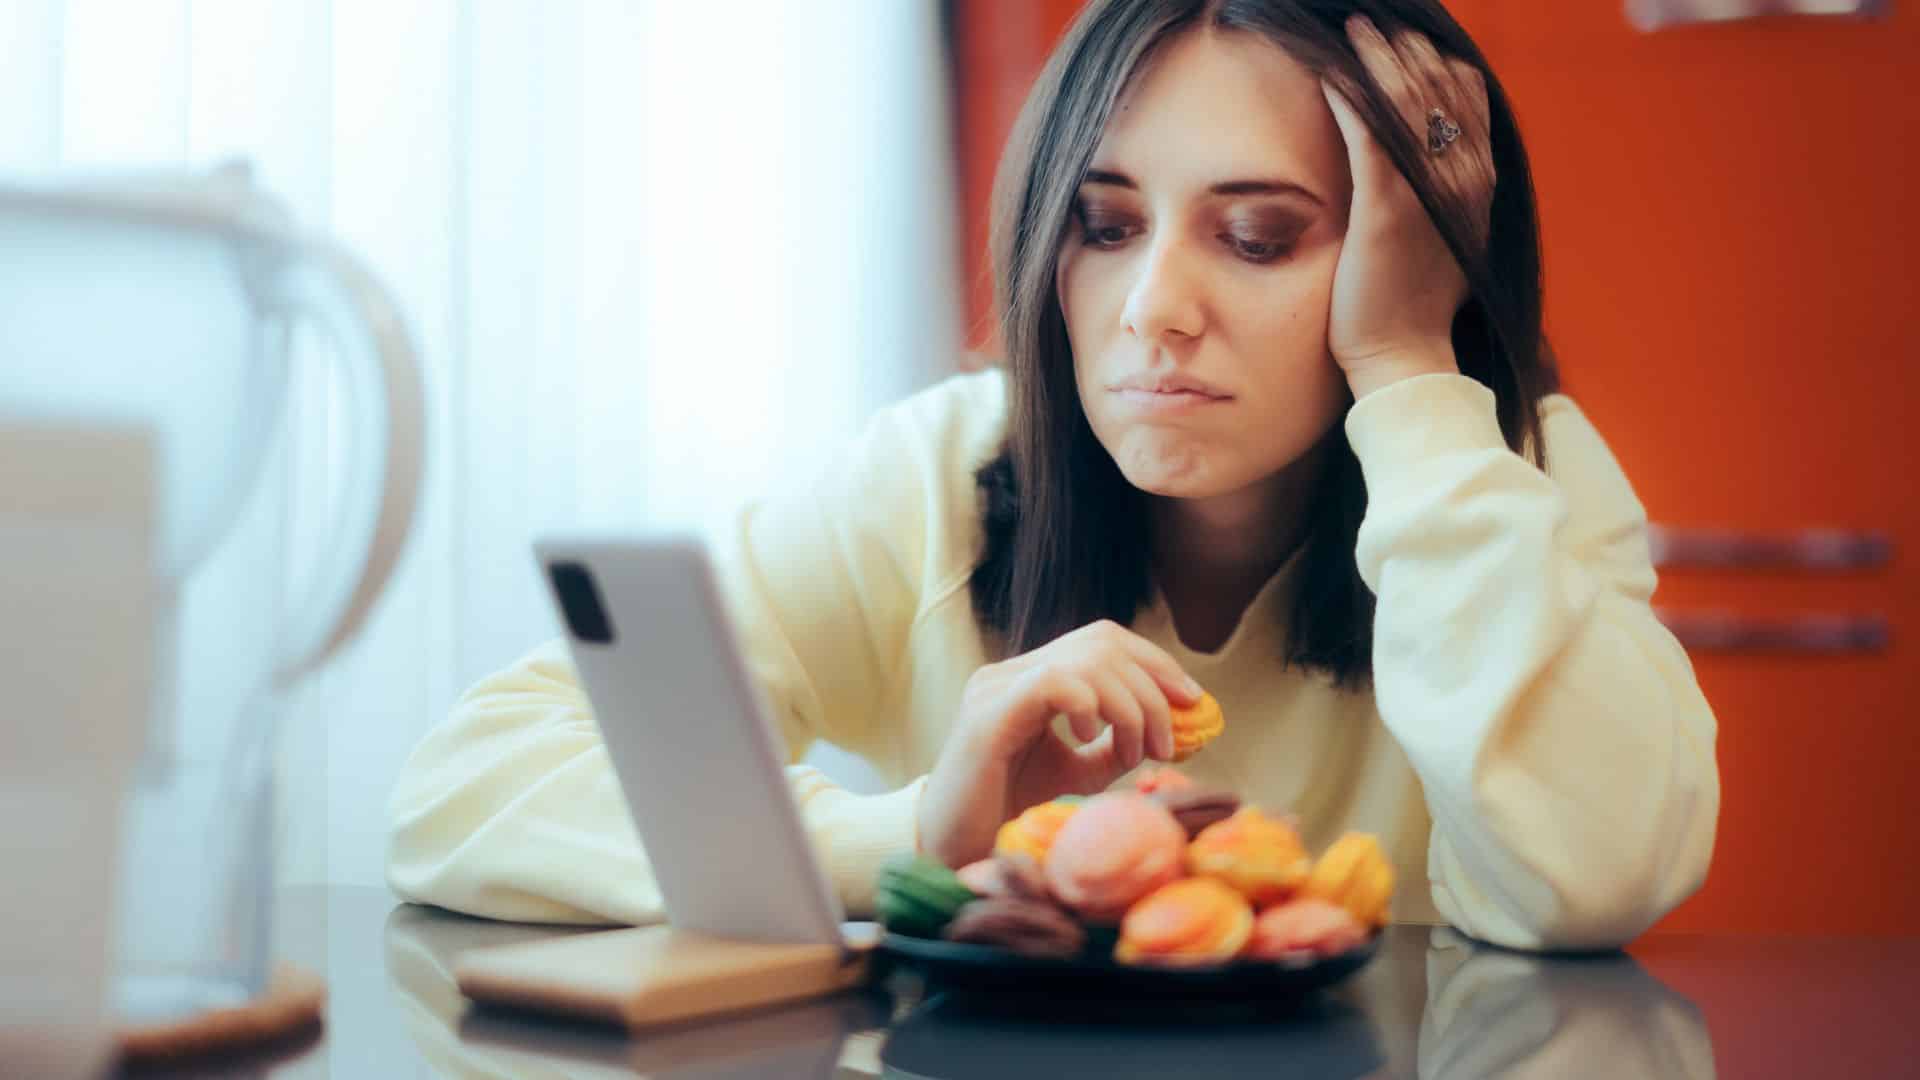 Frau isst Süßigkeiten aus Stress, schaut auf Smartphone